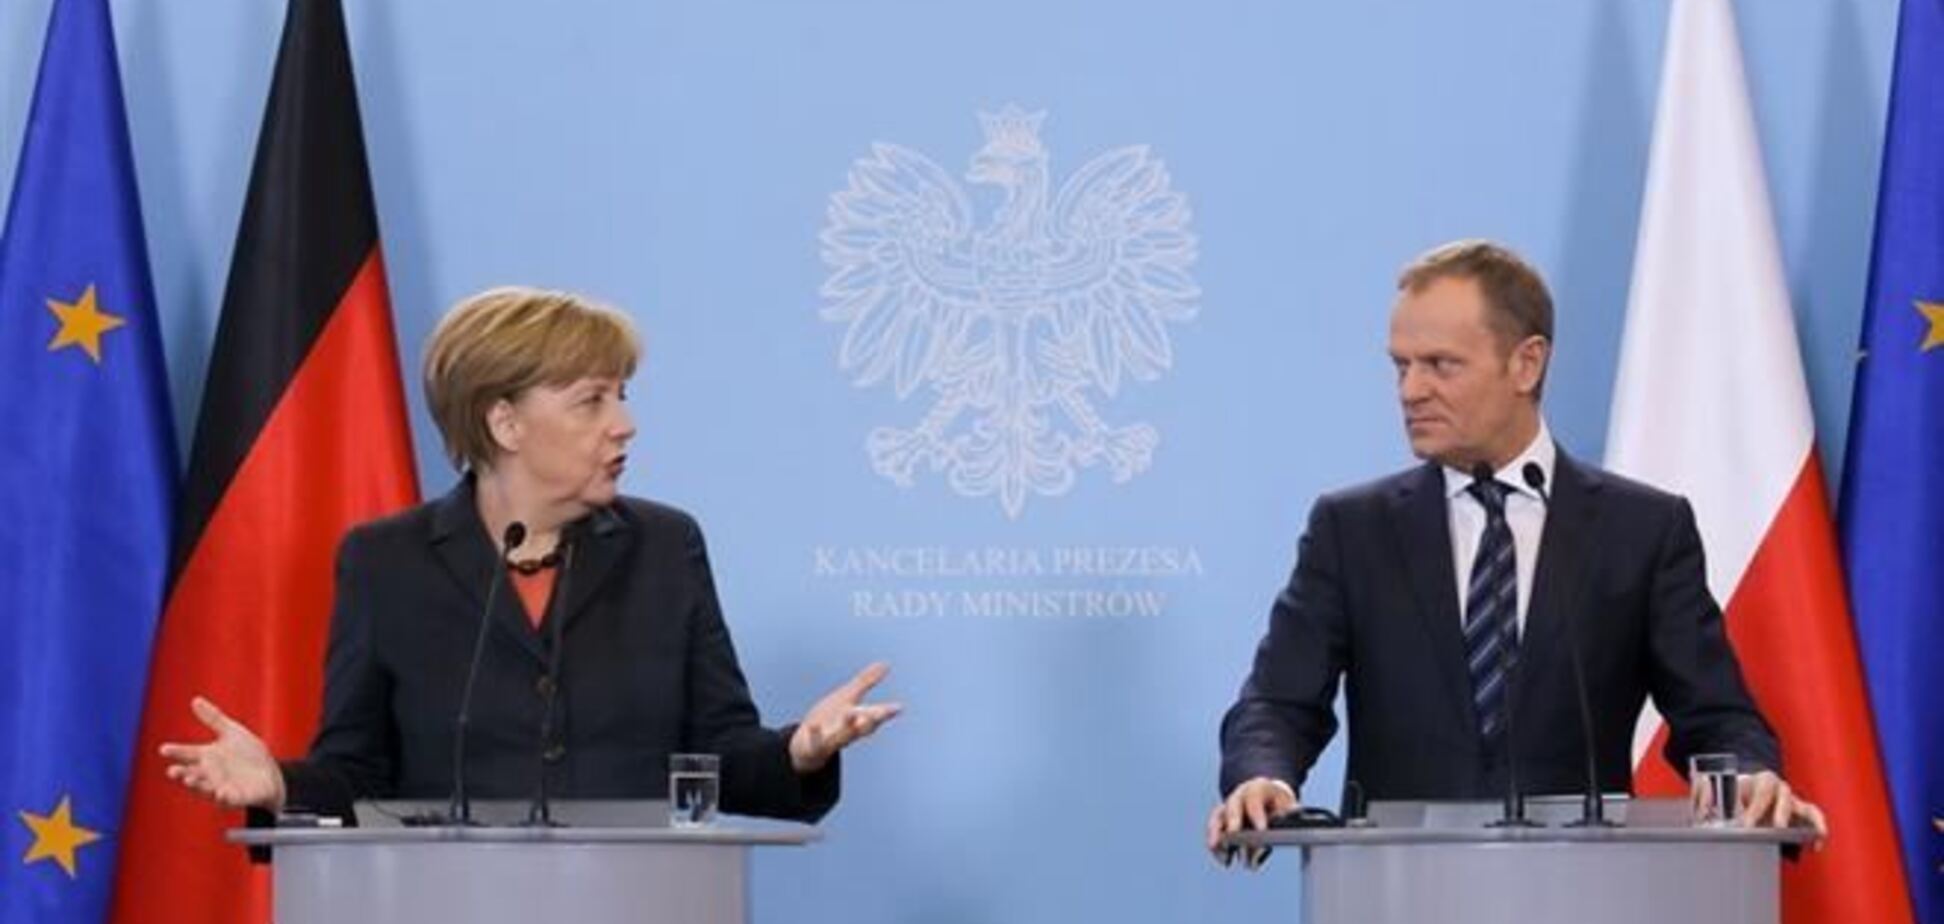 Євросоюз займеться питанням нових санкцій проти Росії - Меркель